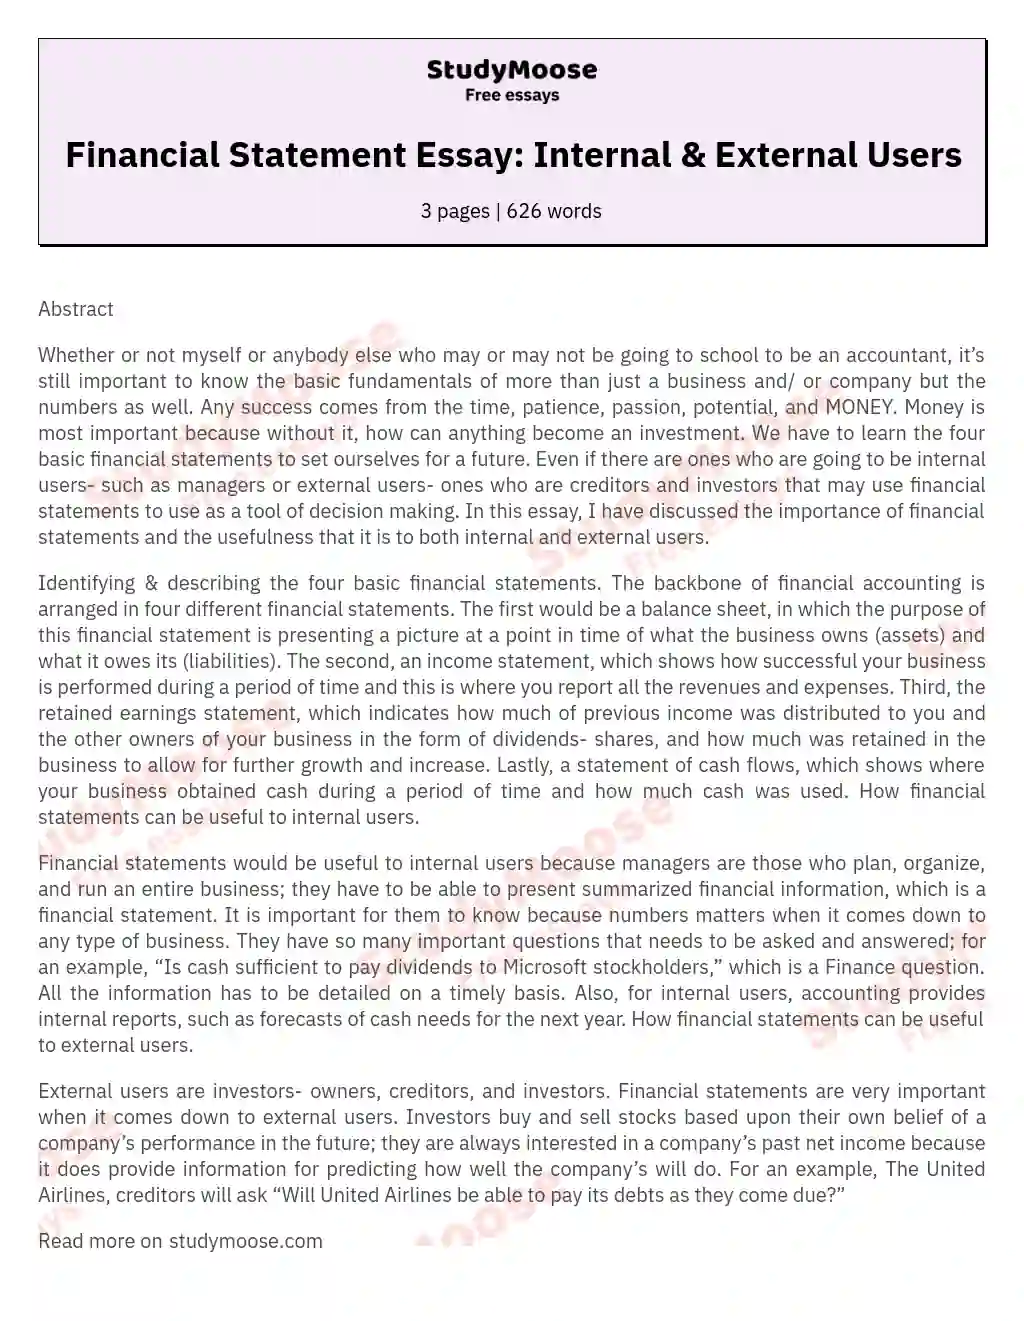 Financial Statement Essay: Internal & External Users essay